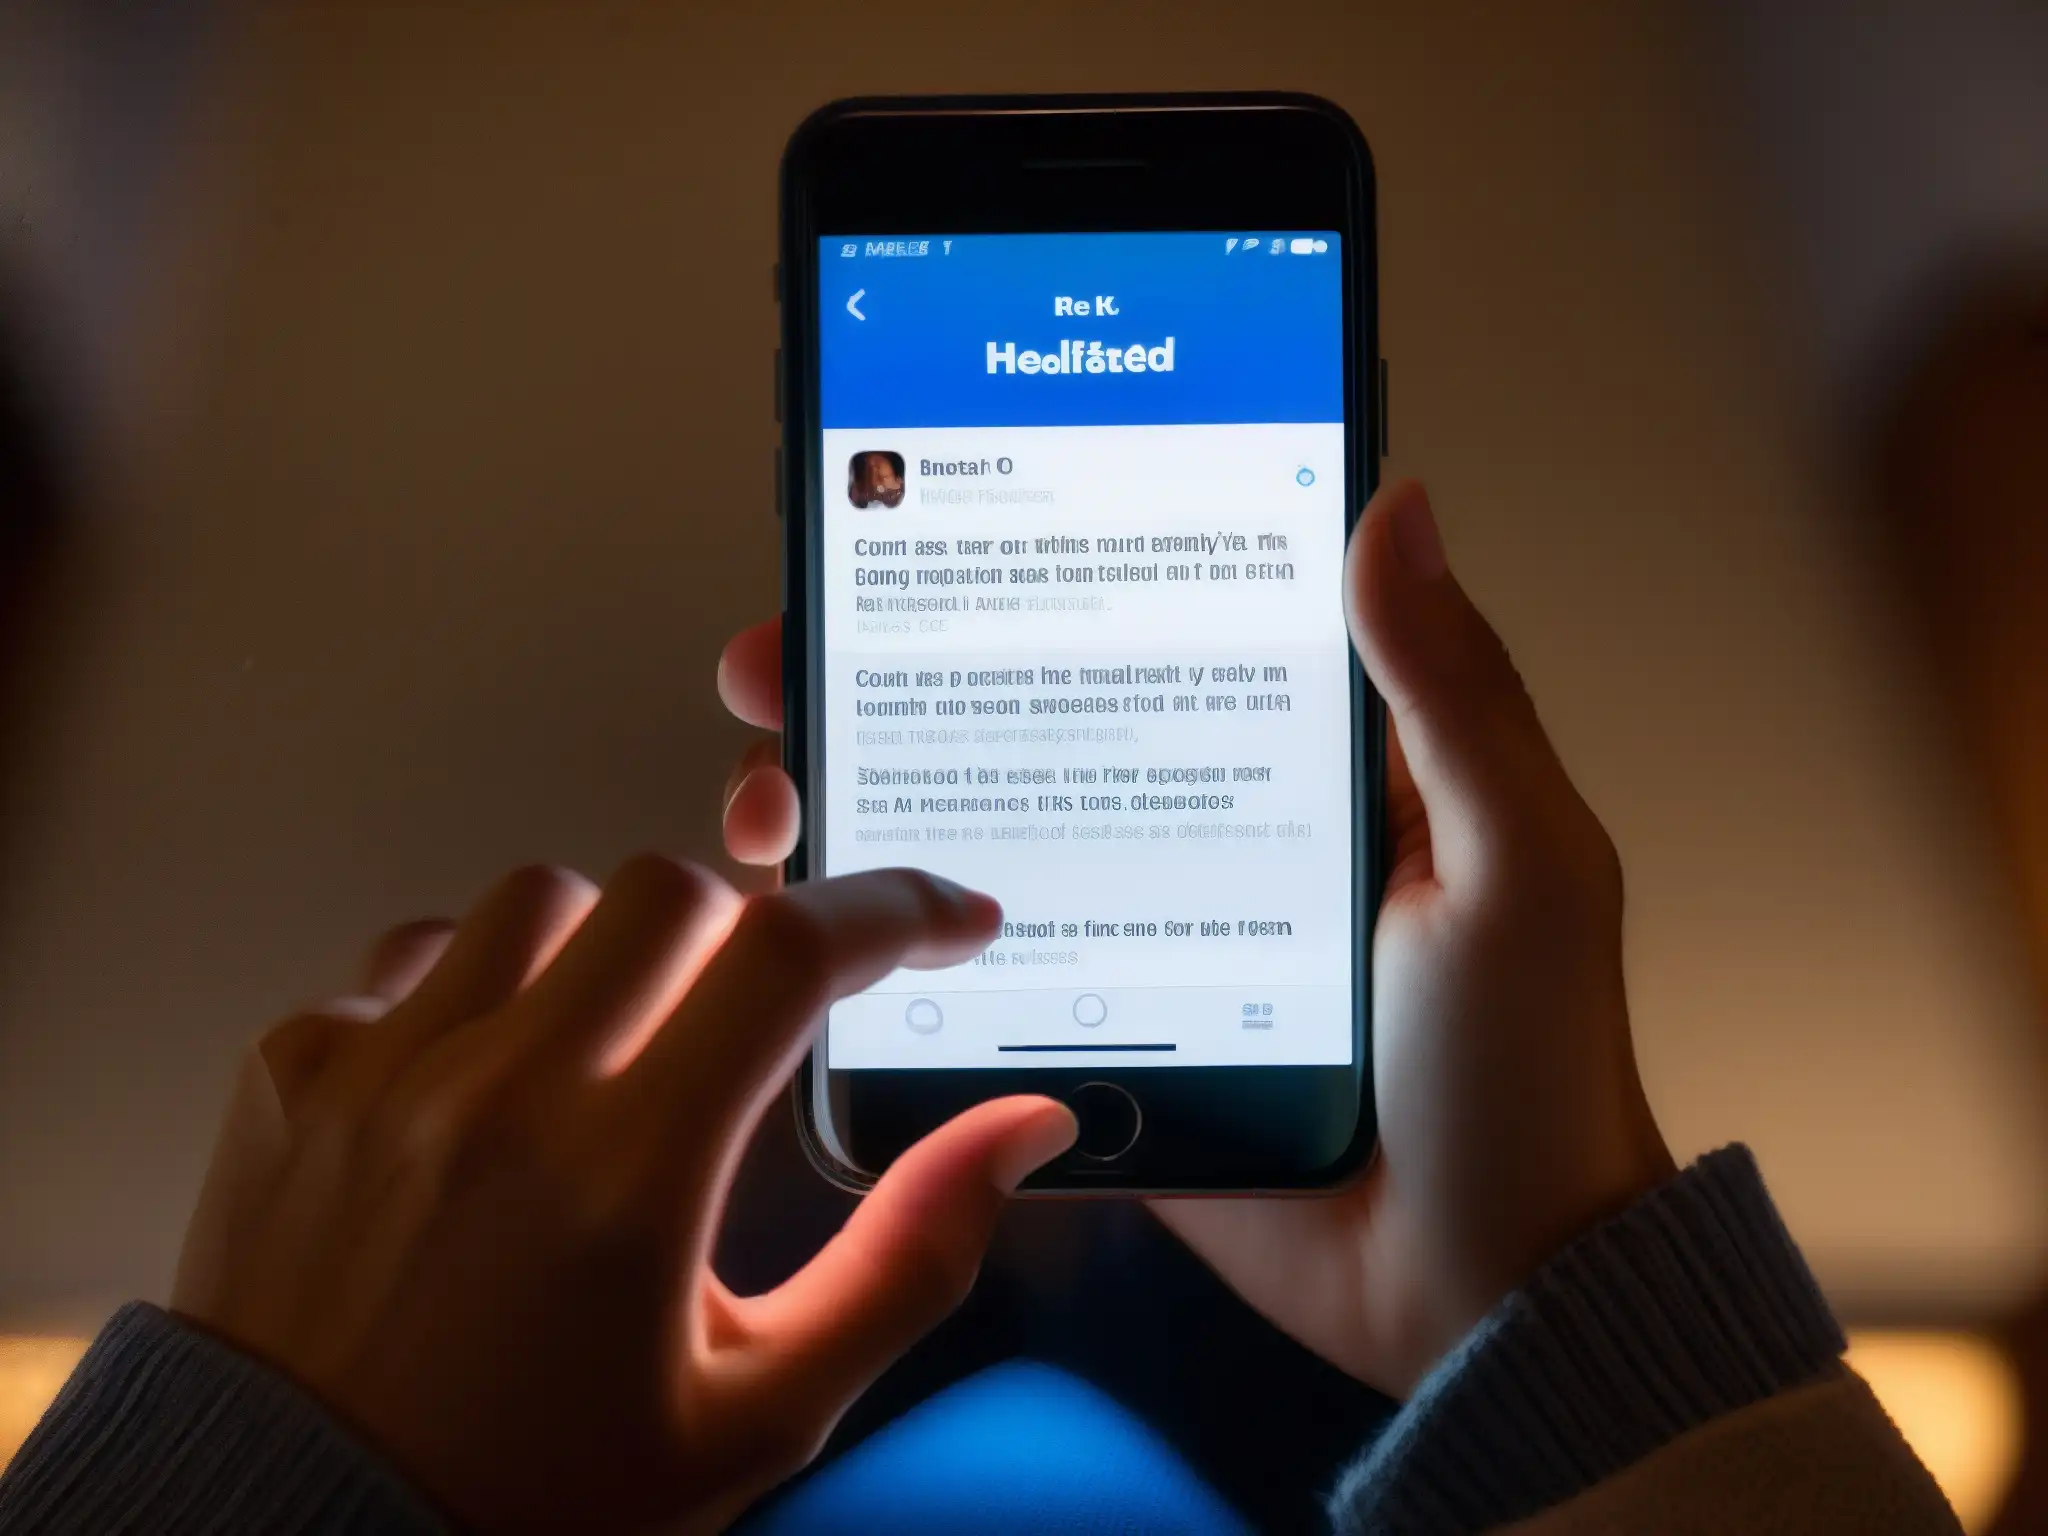 Unas manos nerviosas juegan con un teléfono mientras se leen mensajes inquietantes sobre salud en redes sociales